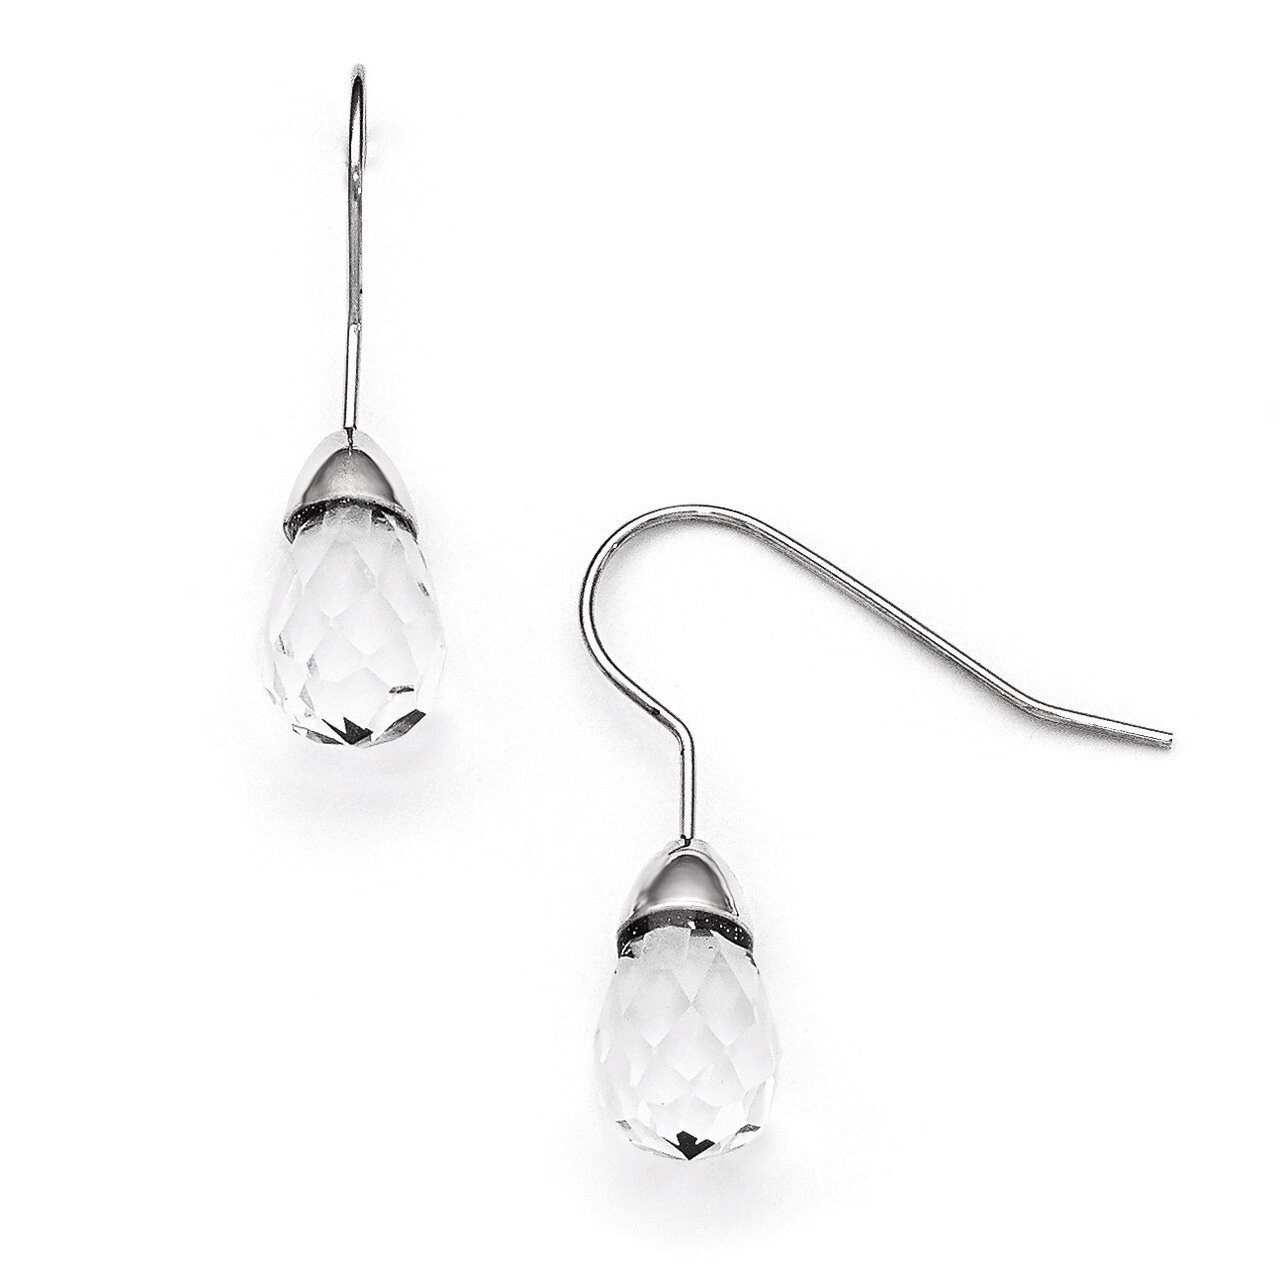 Polished Glass Shepherd Hook Earrings - Stainless Steel SRE881